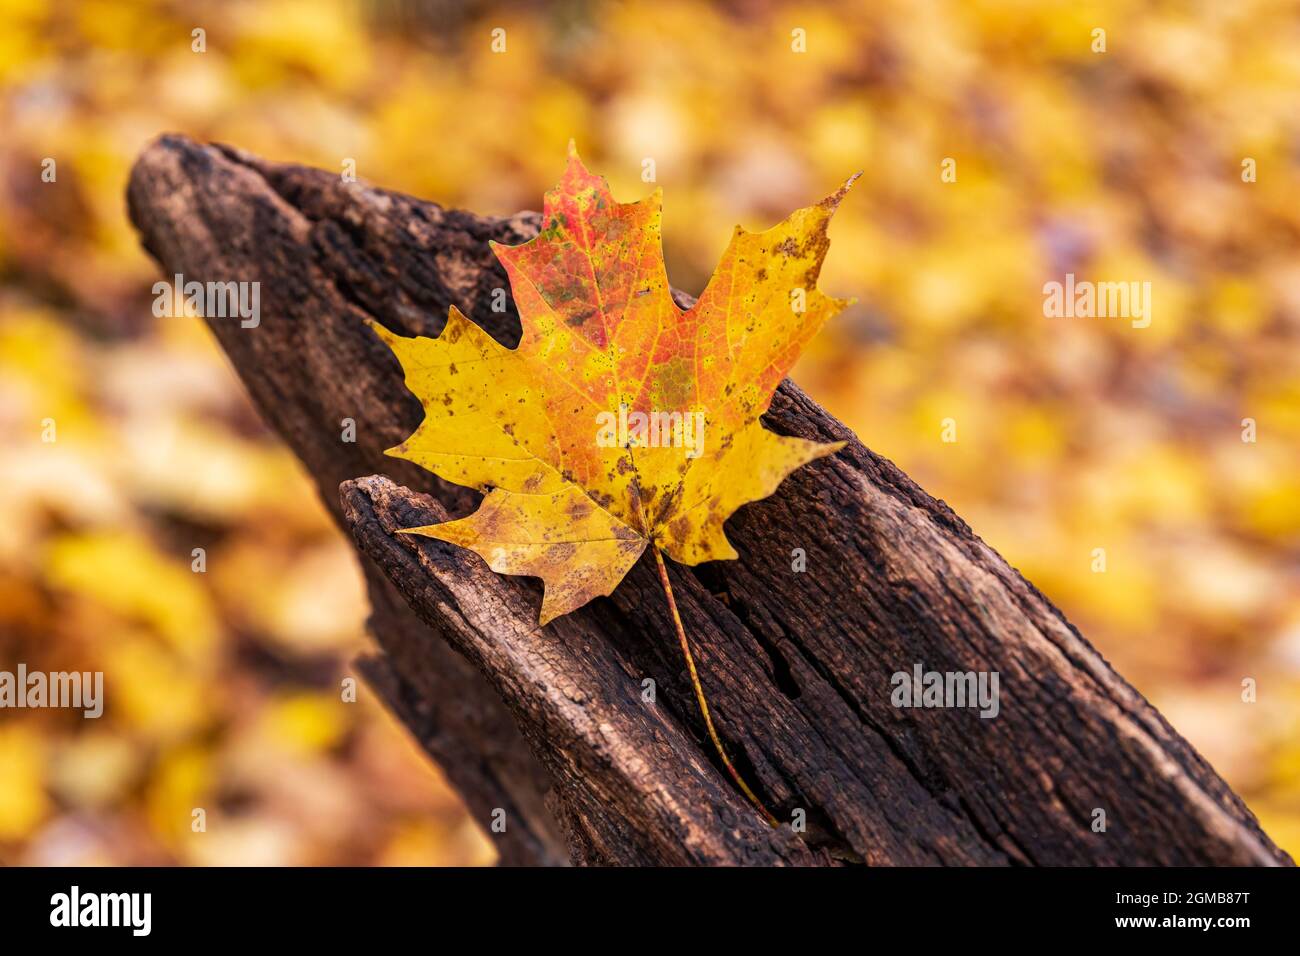 Hoja amarilla en el tronco con follaje de otoño en el fondo. Concepto de otoño y otoño Foto de stock